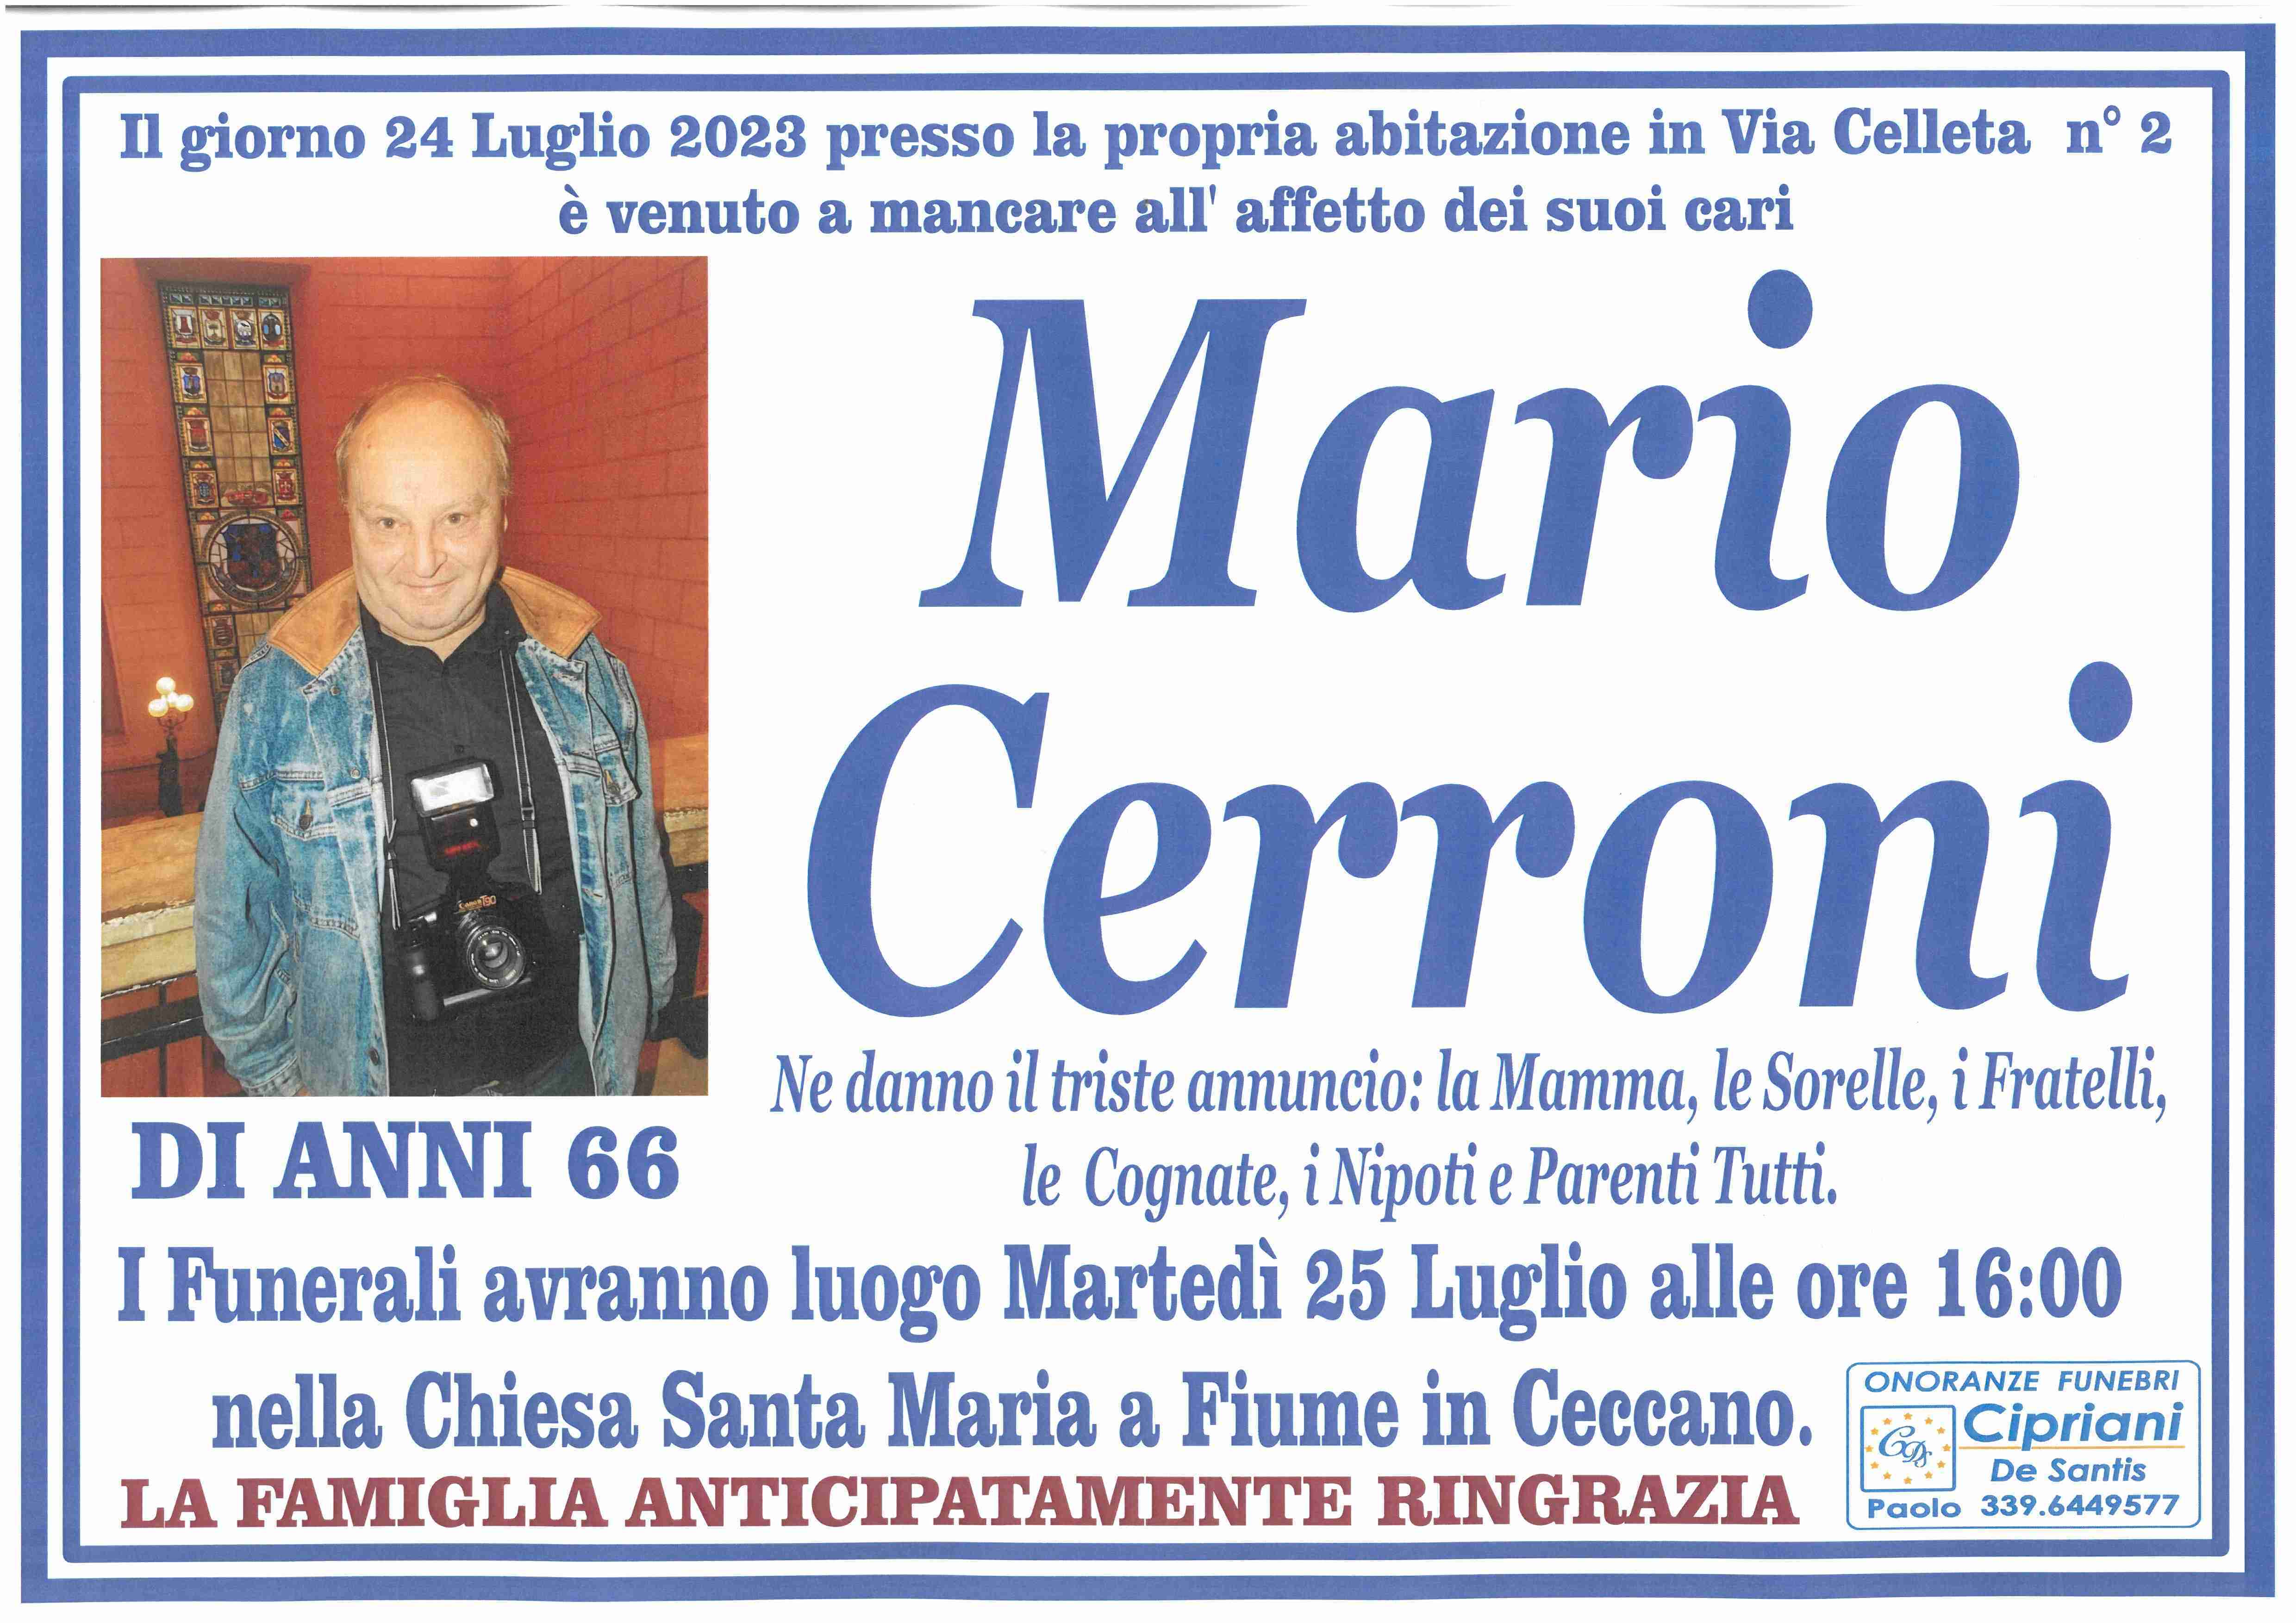 Mario Cerroni